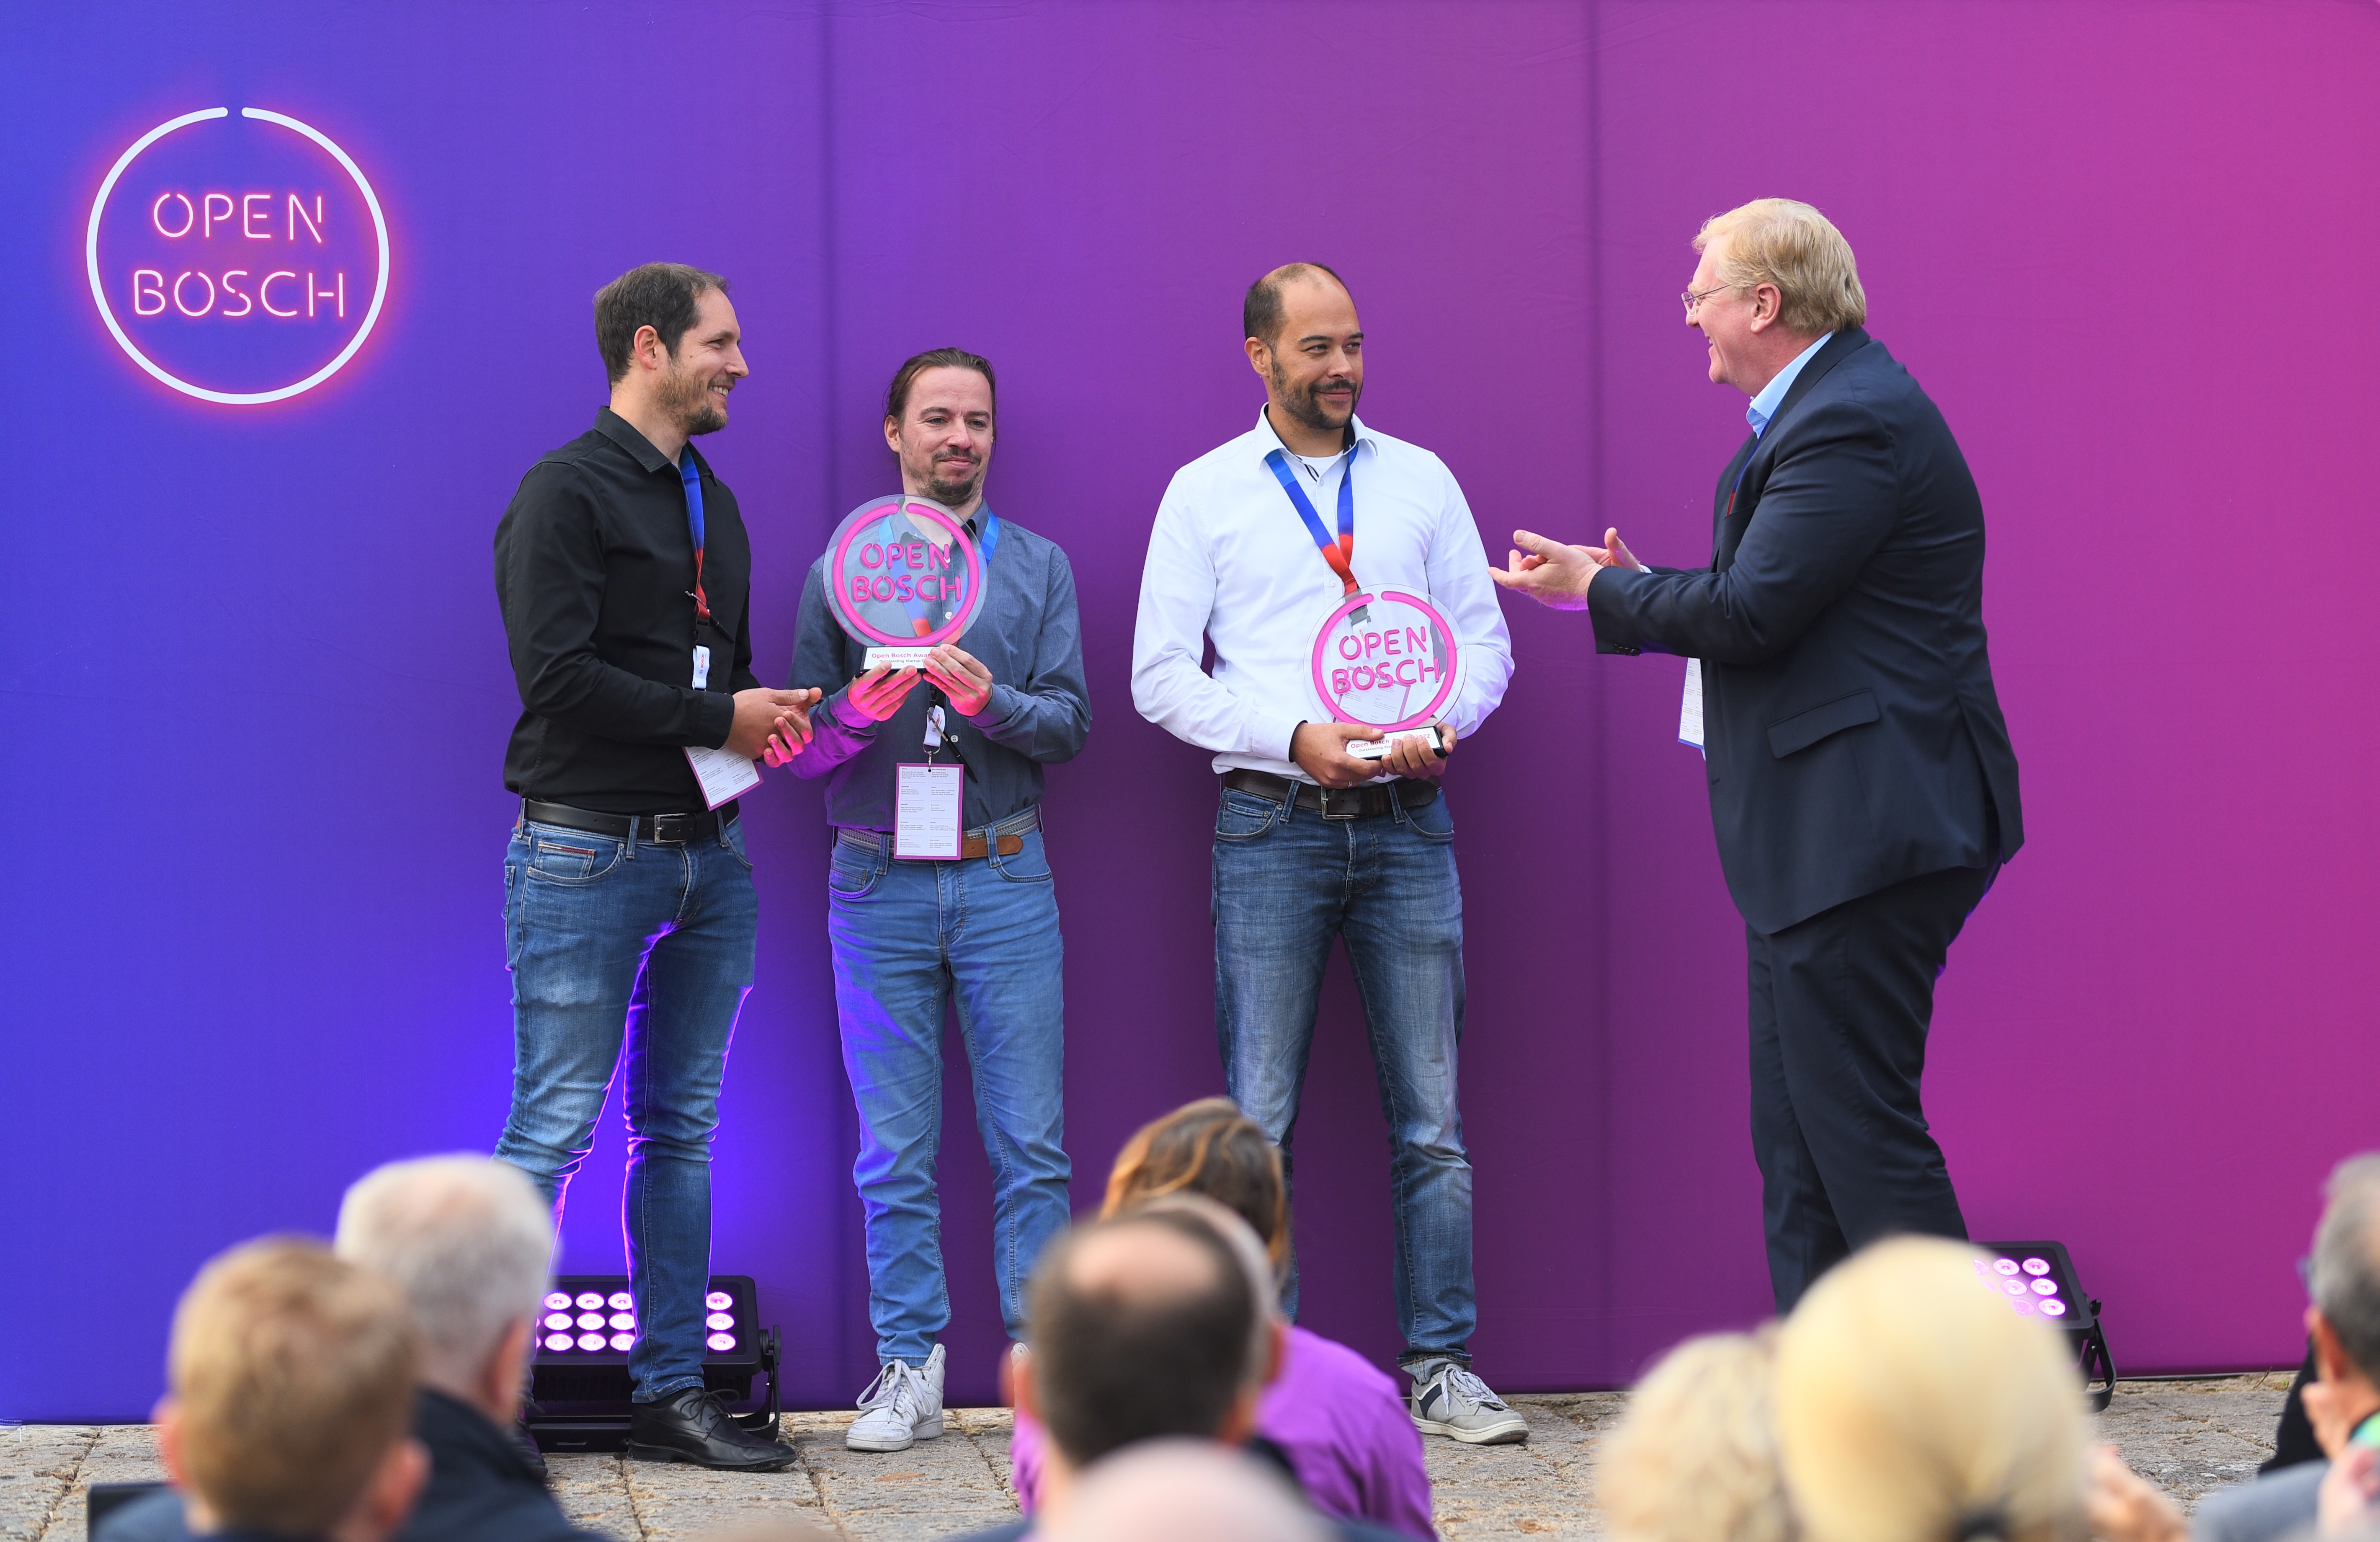 Open Bosch Award 2022 Winner – Philipp Crocoll (COO), Julius Ziegler (CTO) und Henning Lategahn (CEO Atlatec); Dr. Stefan Hartung (Vorsitzender der Geschäftsführung der Robert Bosch Gmb